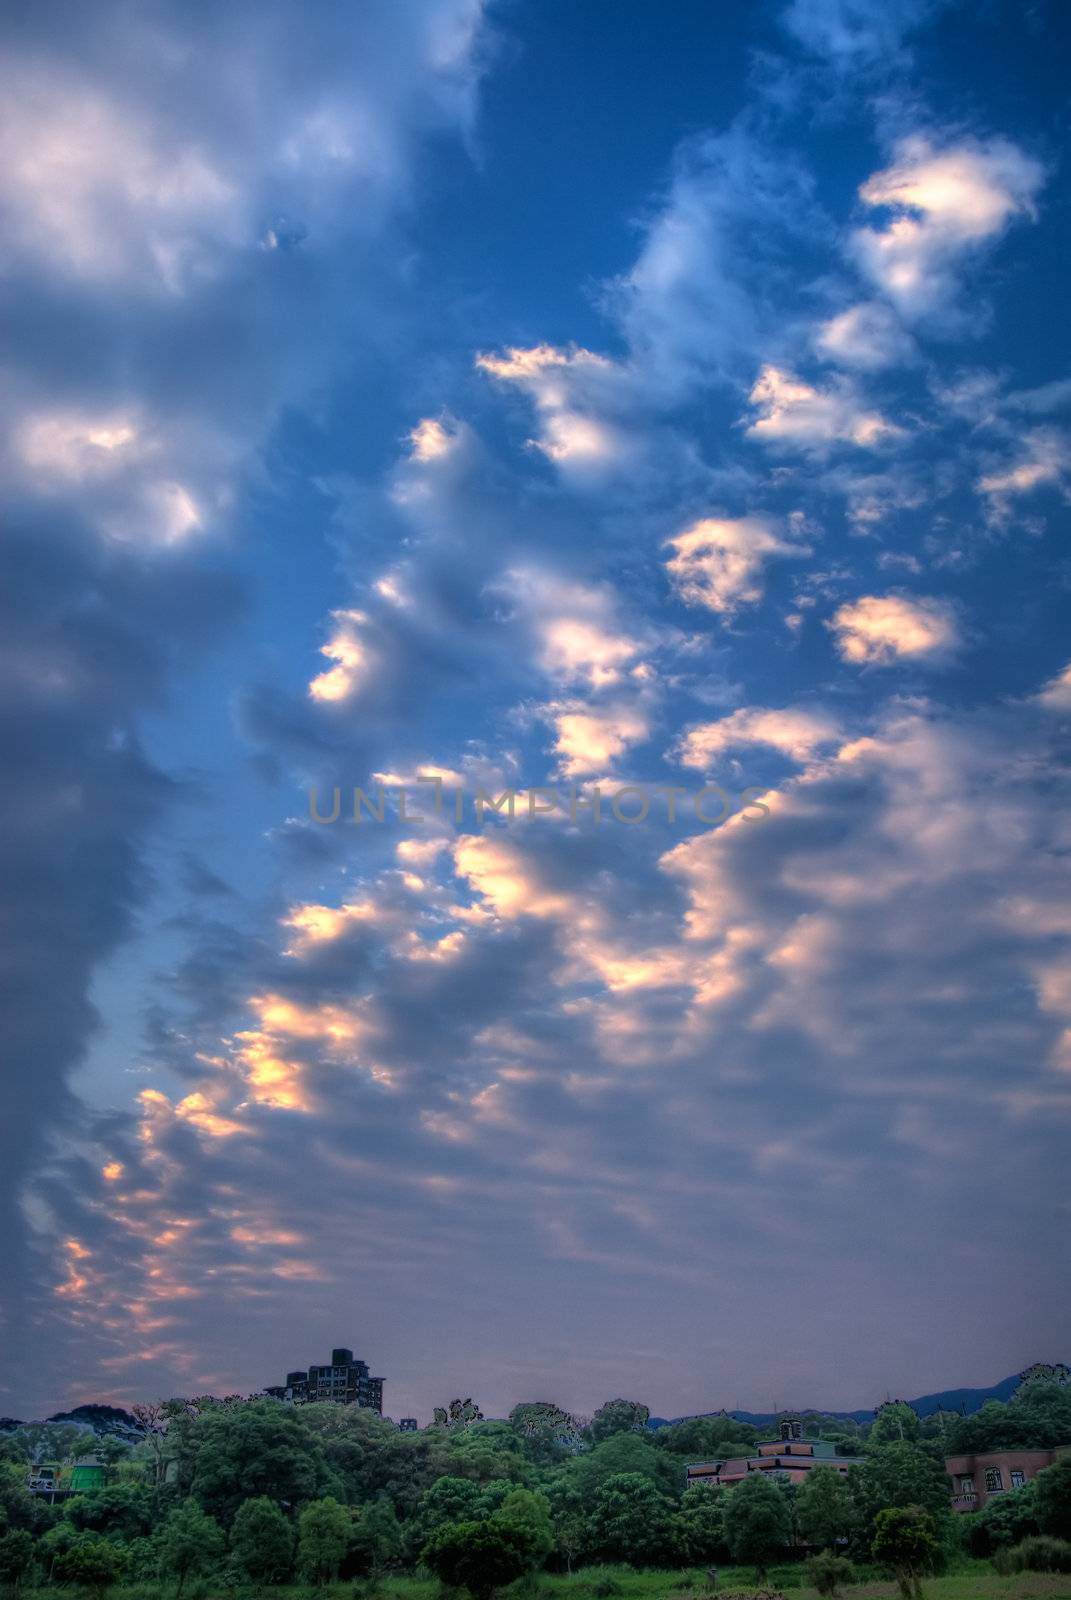 clouds over farm by elwynn